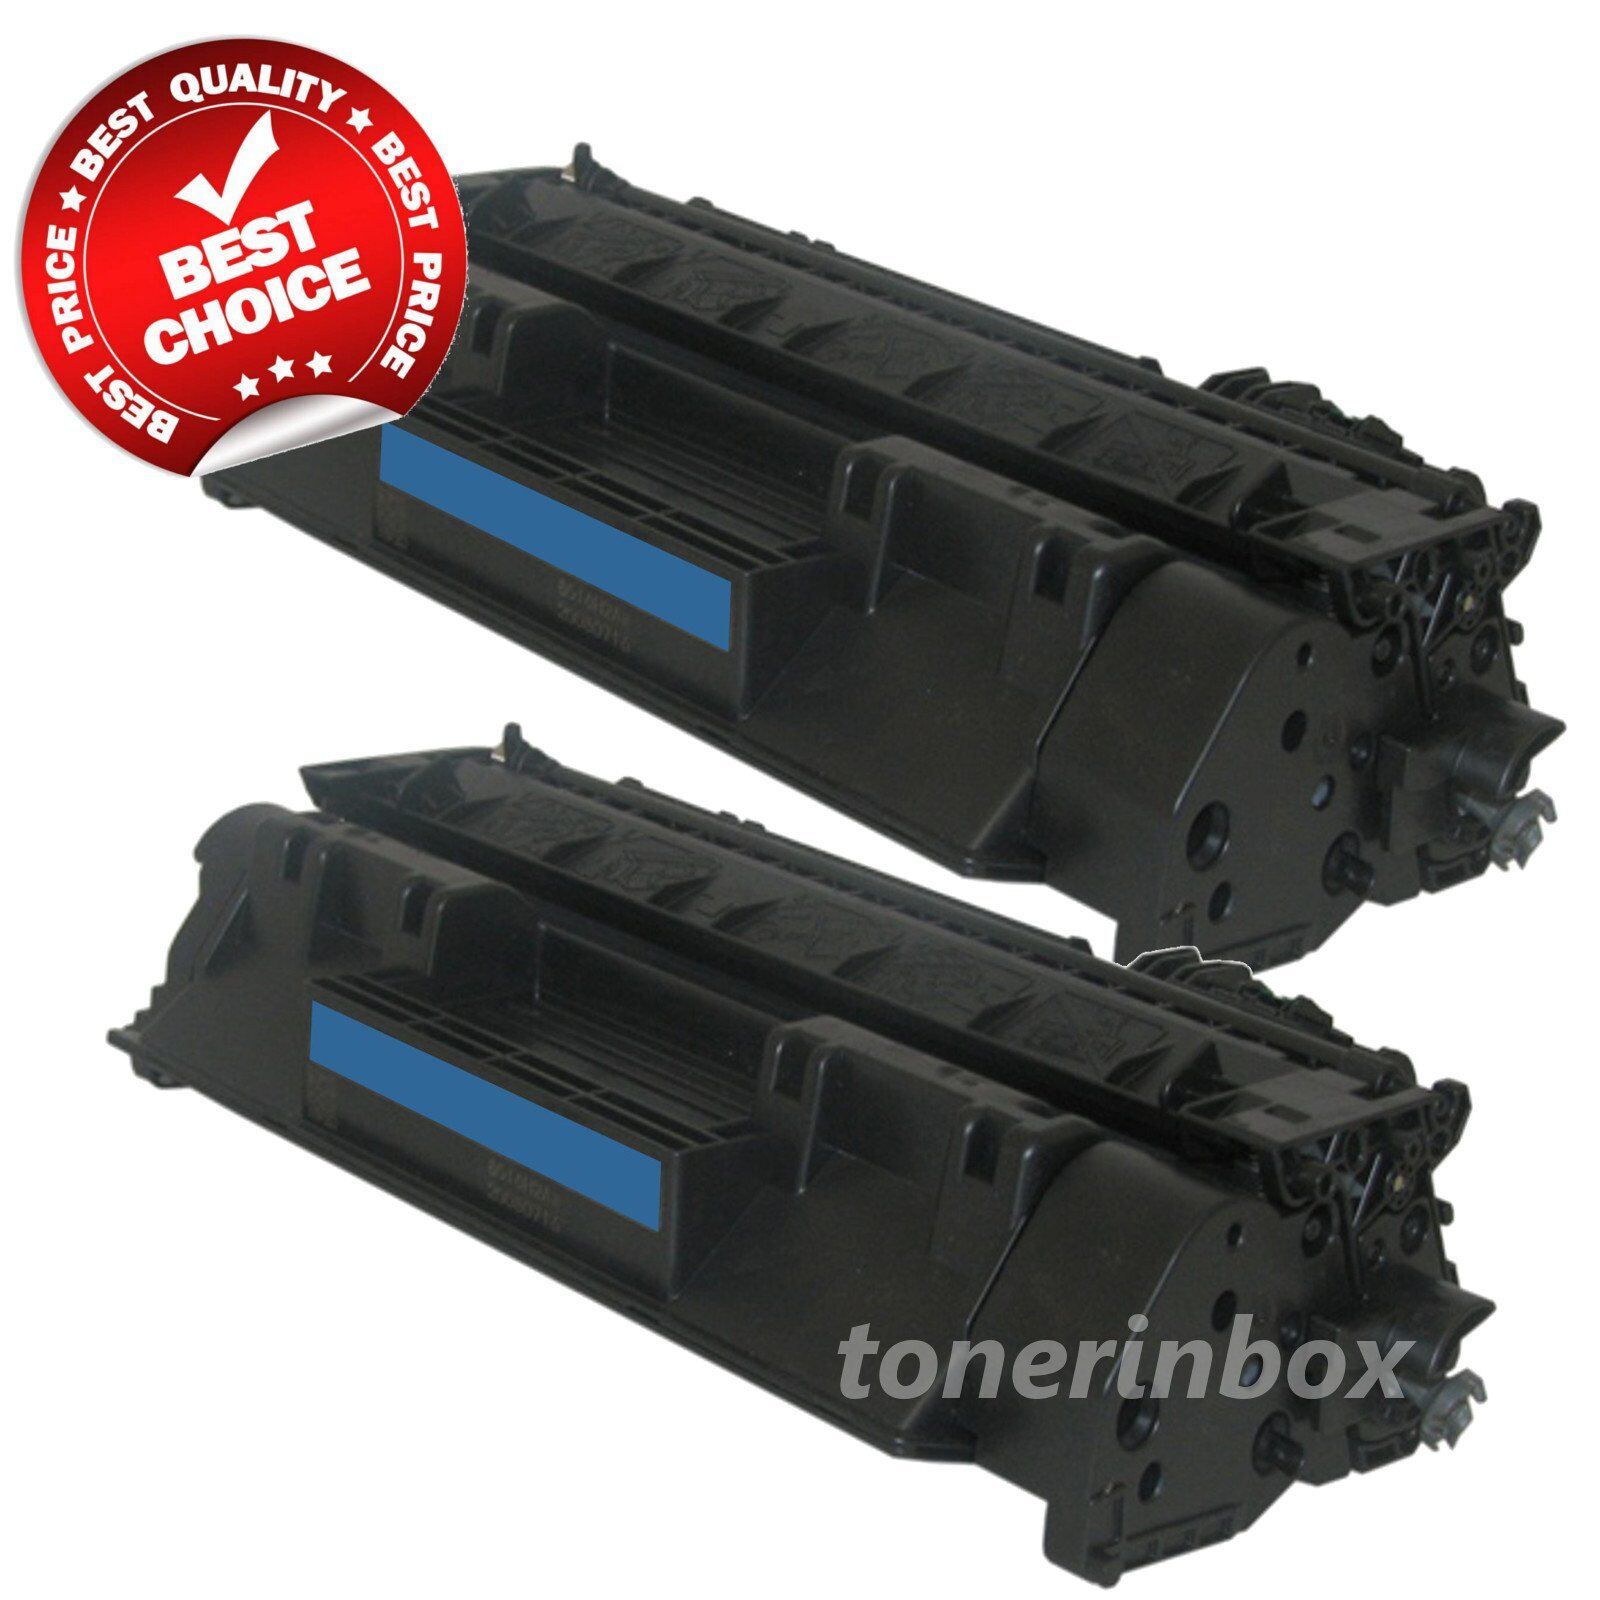 2PK Compatible Toner Cartridge for HP CE505A /05A LaserJet P2035 P2035n P2055